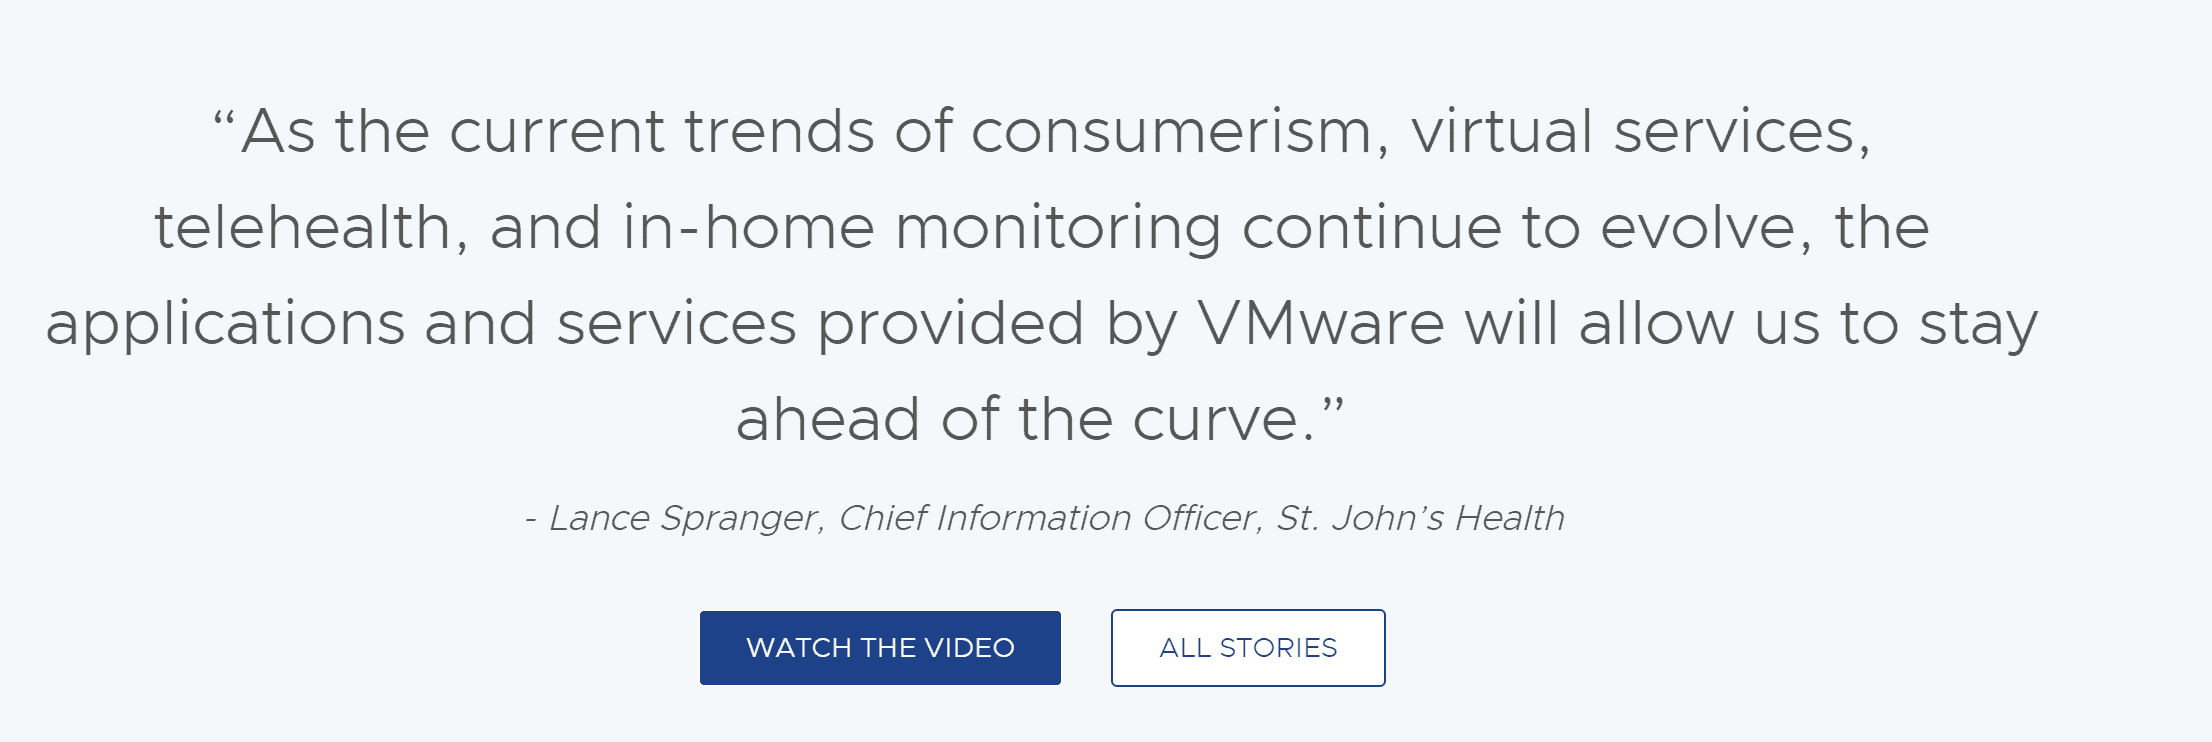 Vmware horizon customer reviews and testimonials